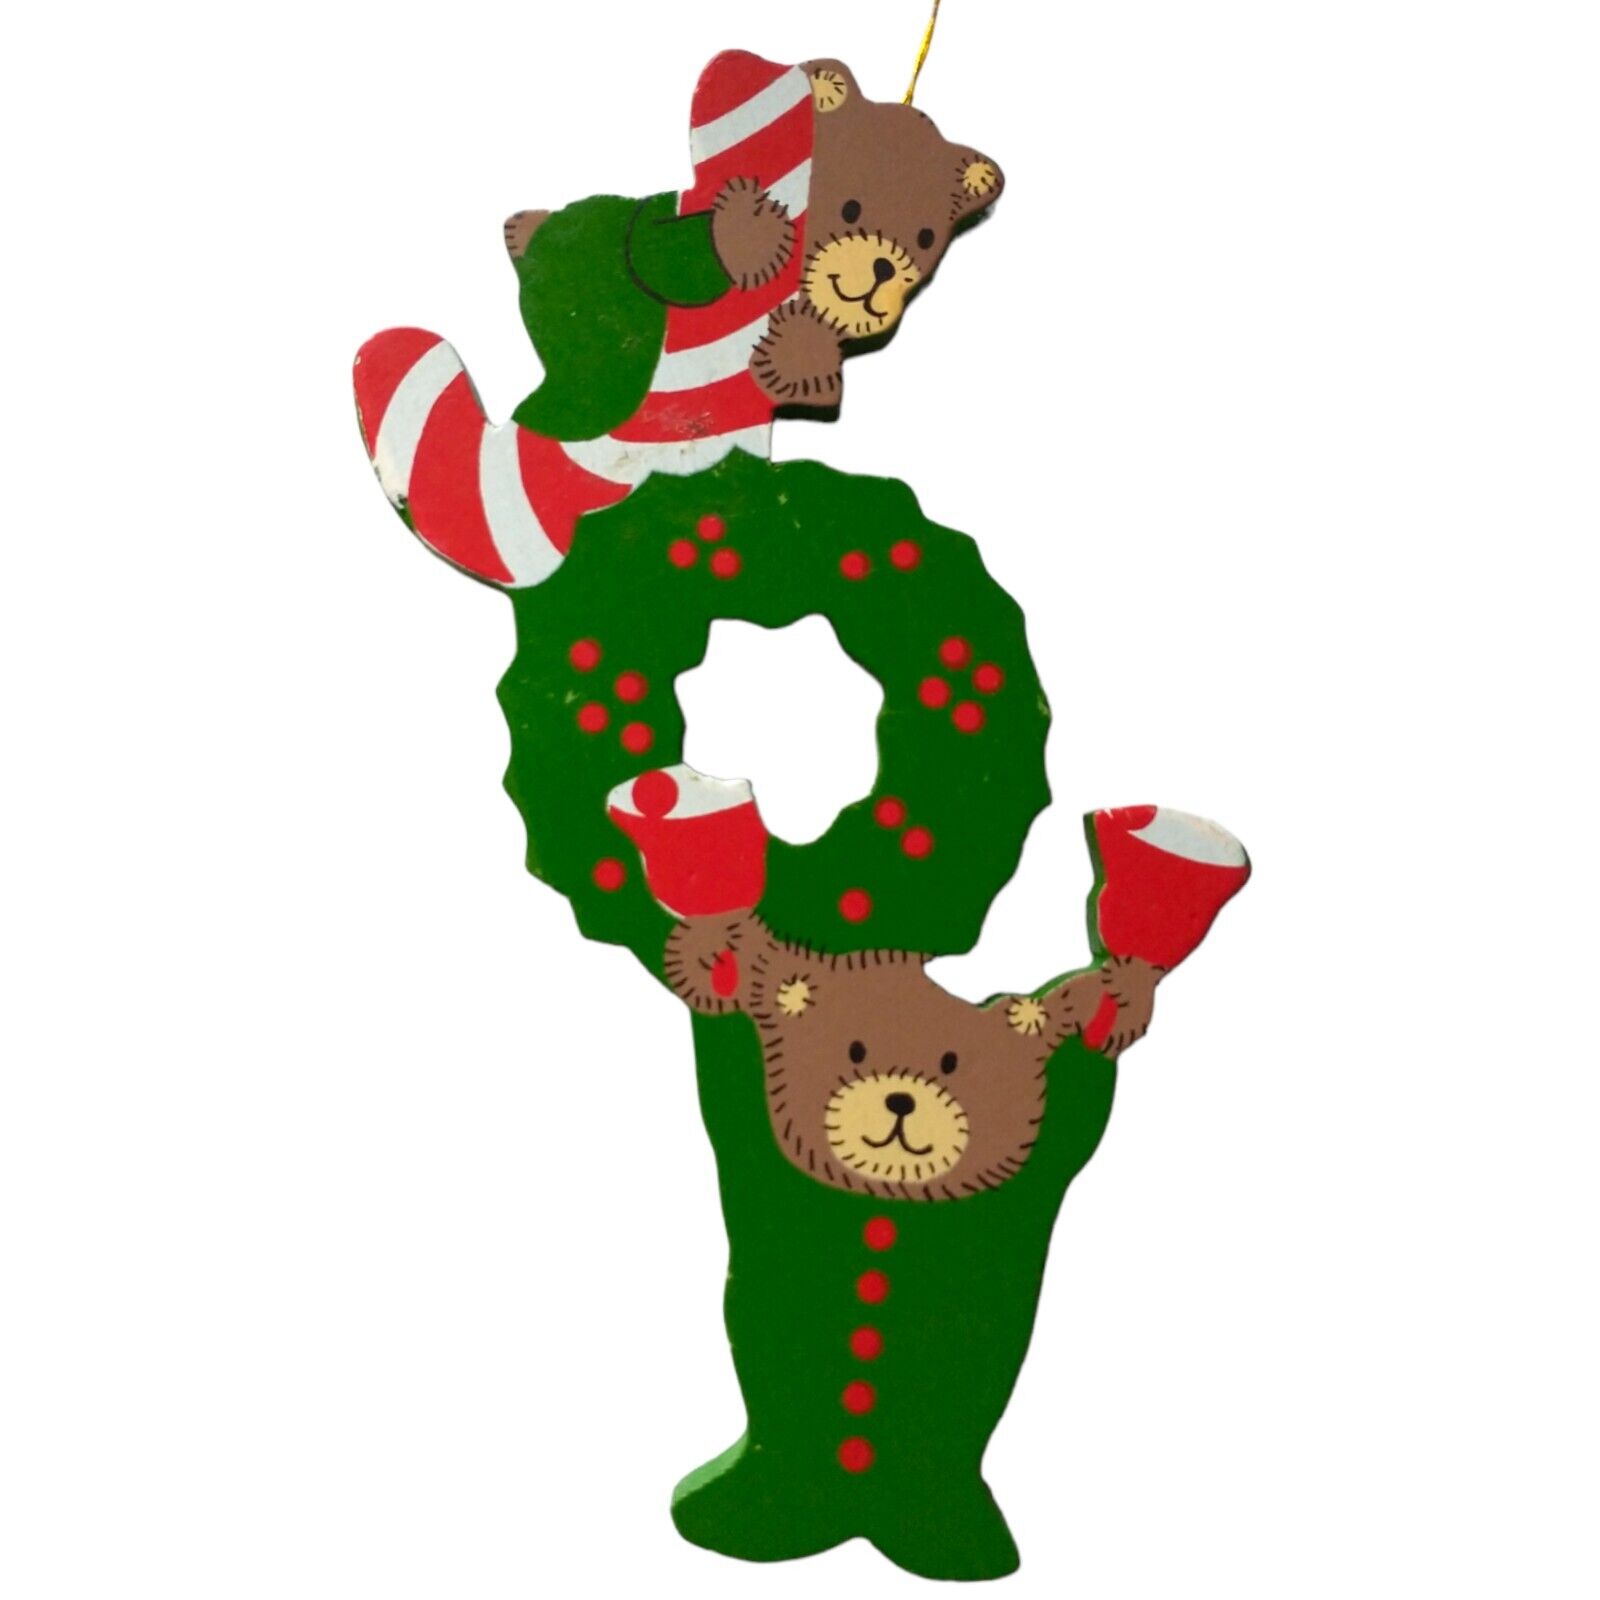 JOY Spell Out Ornament Wood Christmas Die Cut Bears Wreath Handpainted Handmade 